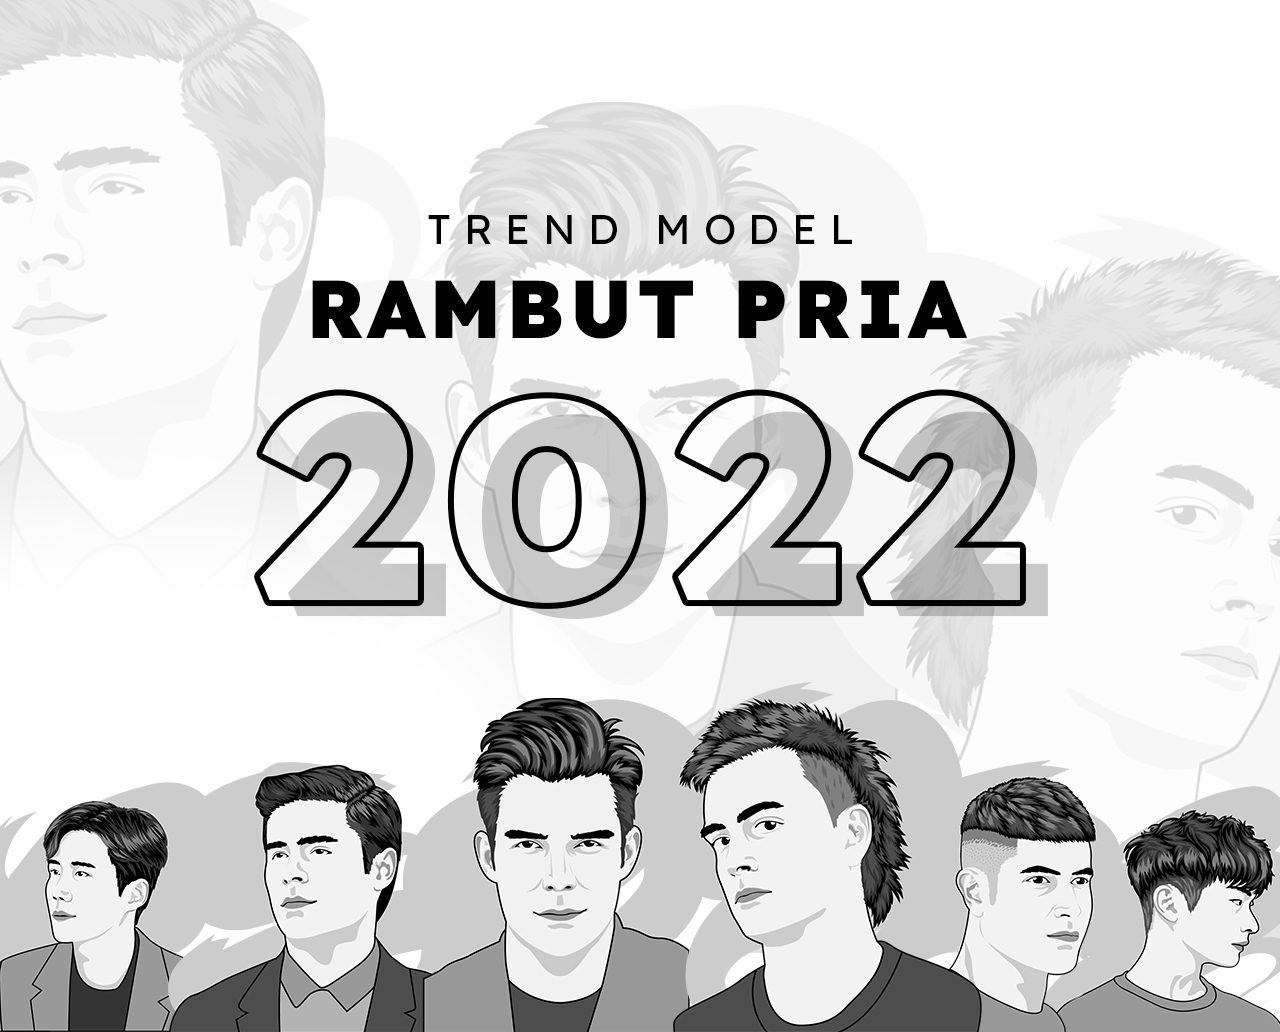 TREND MODEL RAMBUT PRIA 2022